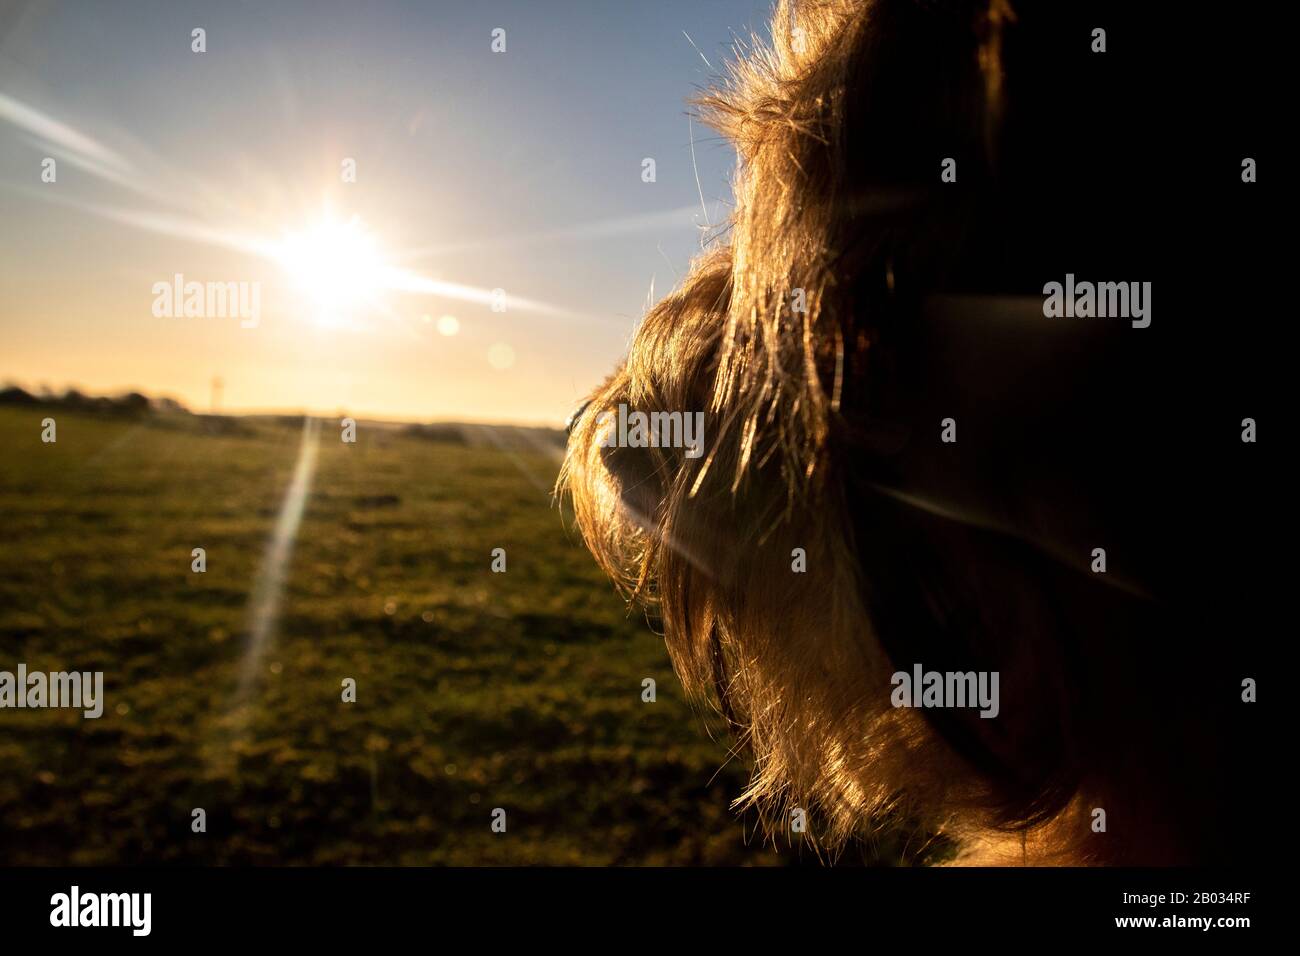 il cane guarda verso il sole e ha pensato che il futuro sembra luminoso Foto Stock